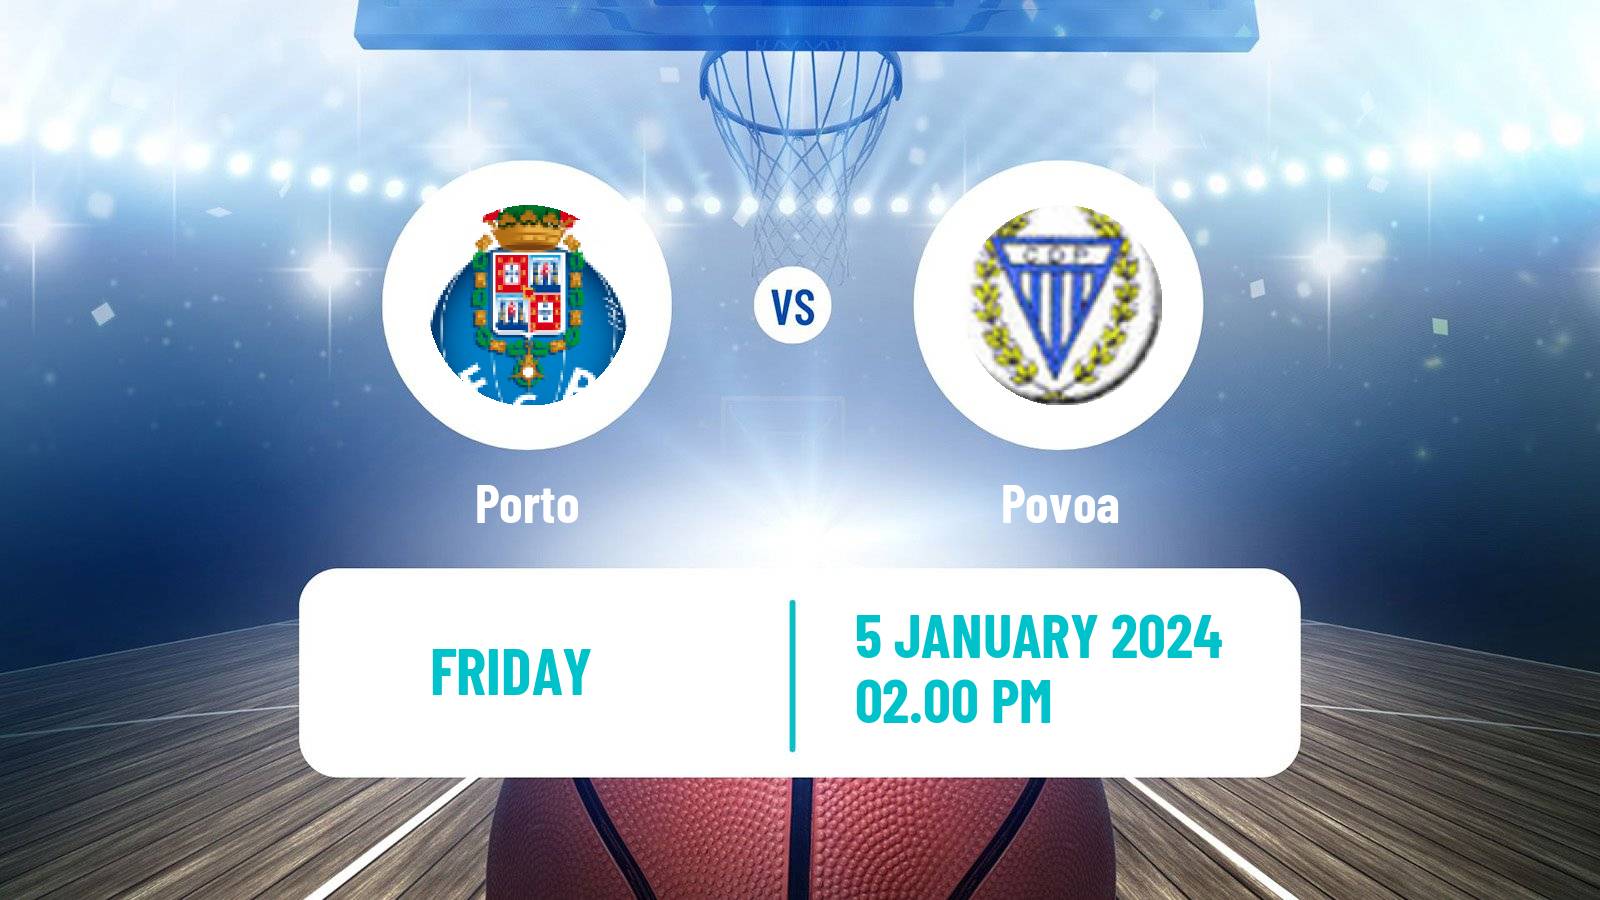 Basketball Portuguese LPB Porto - Povoa